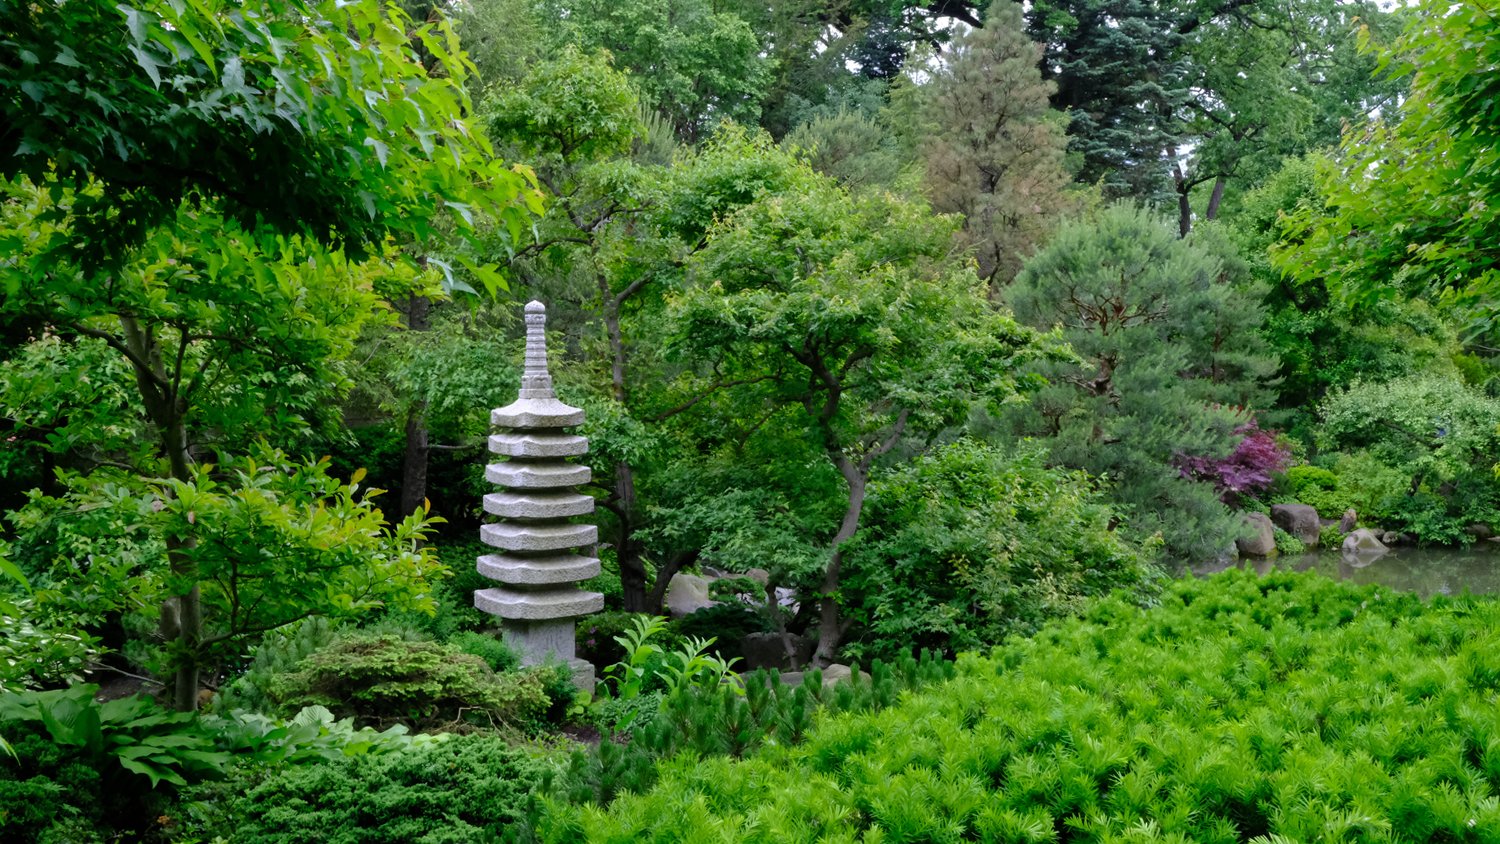 Pagoda near a waterfall.